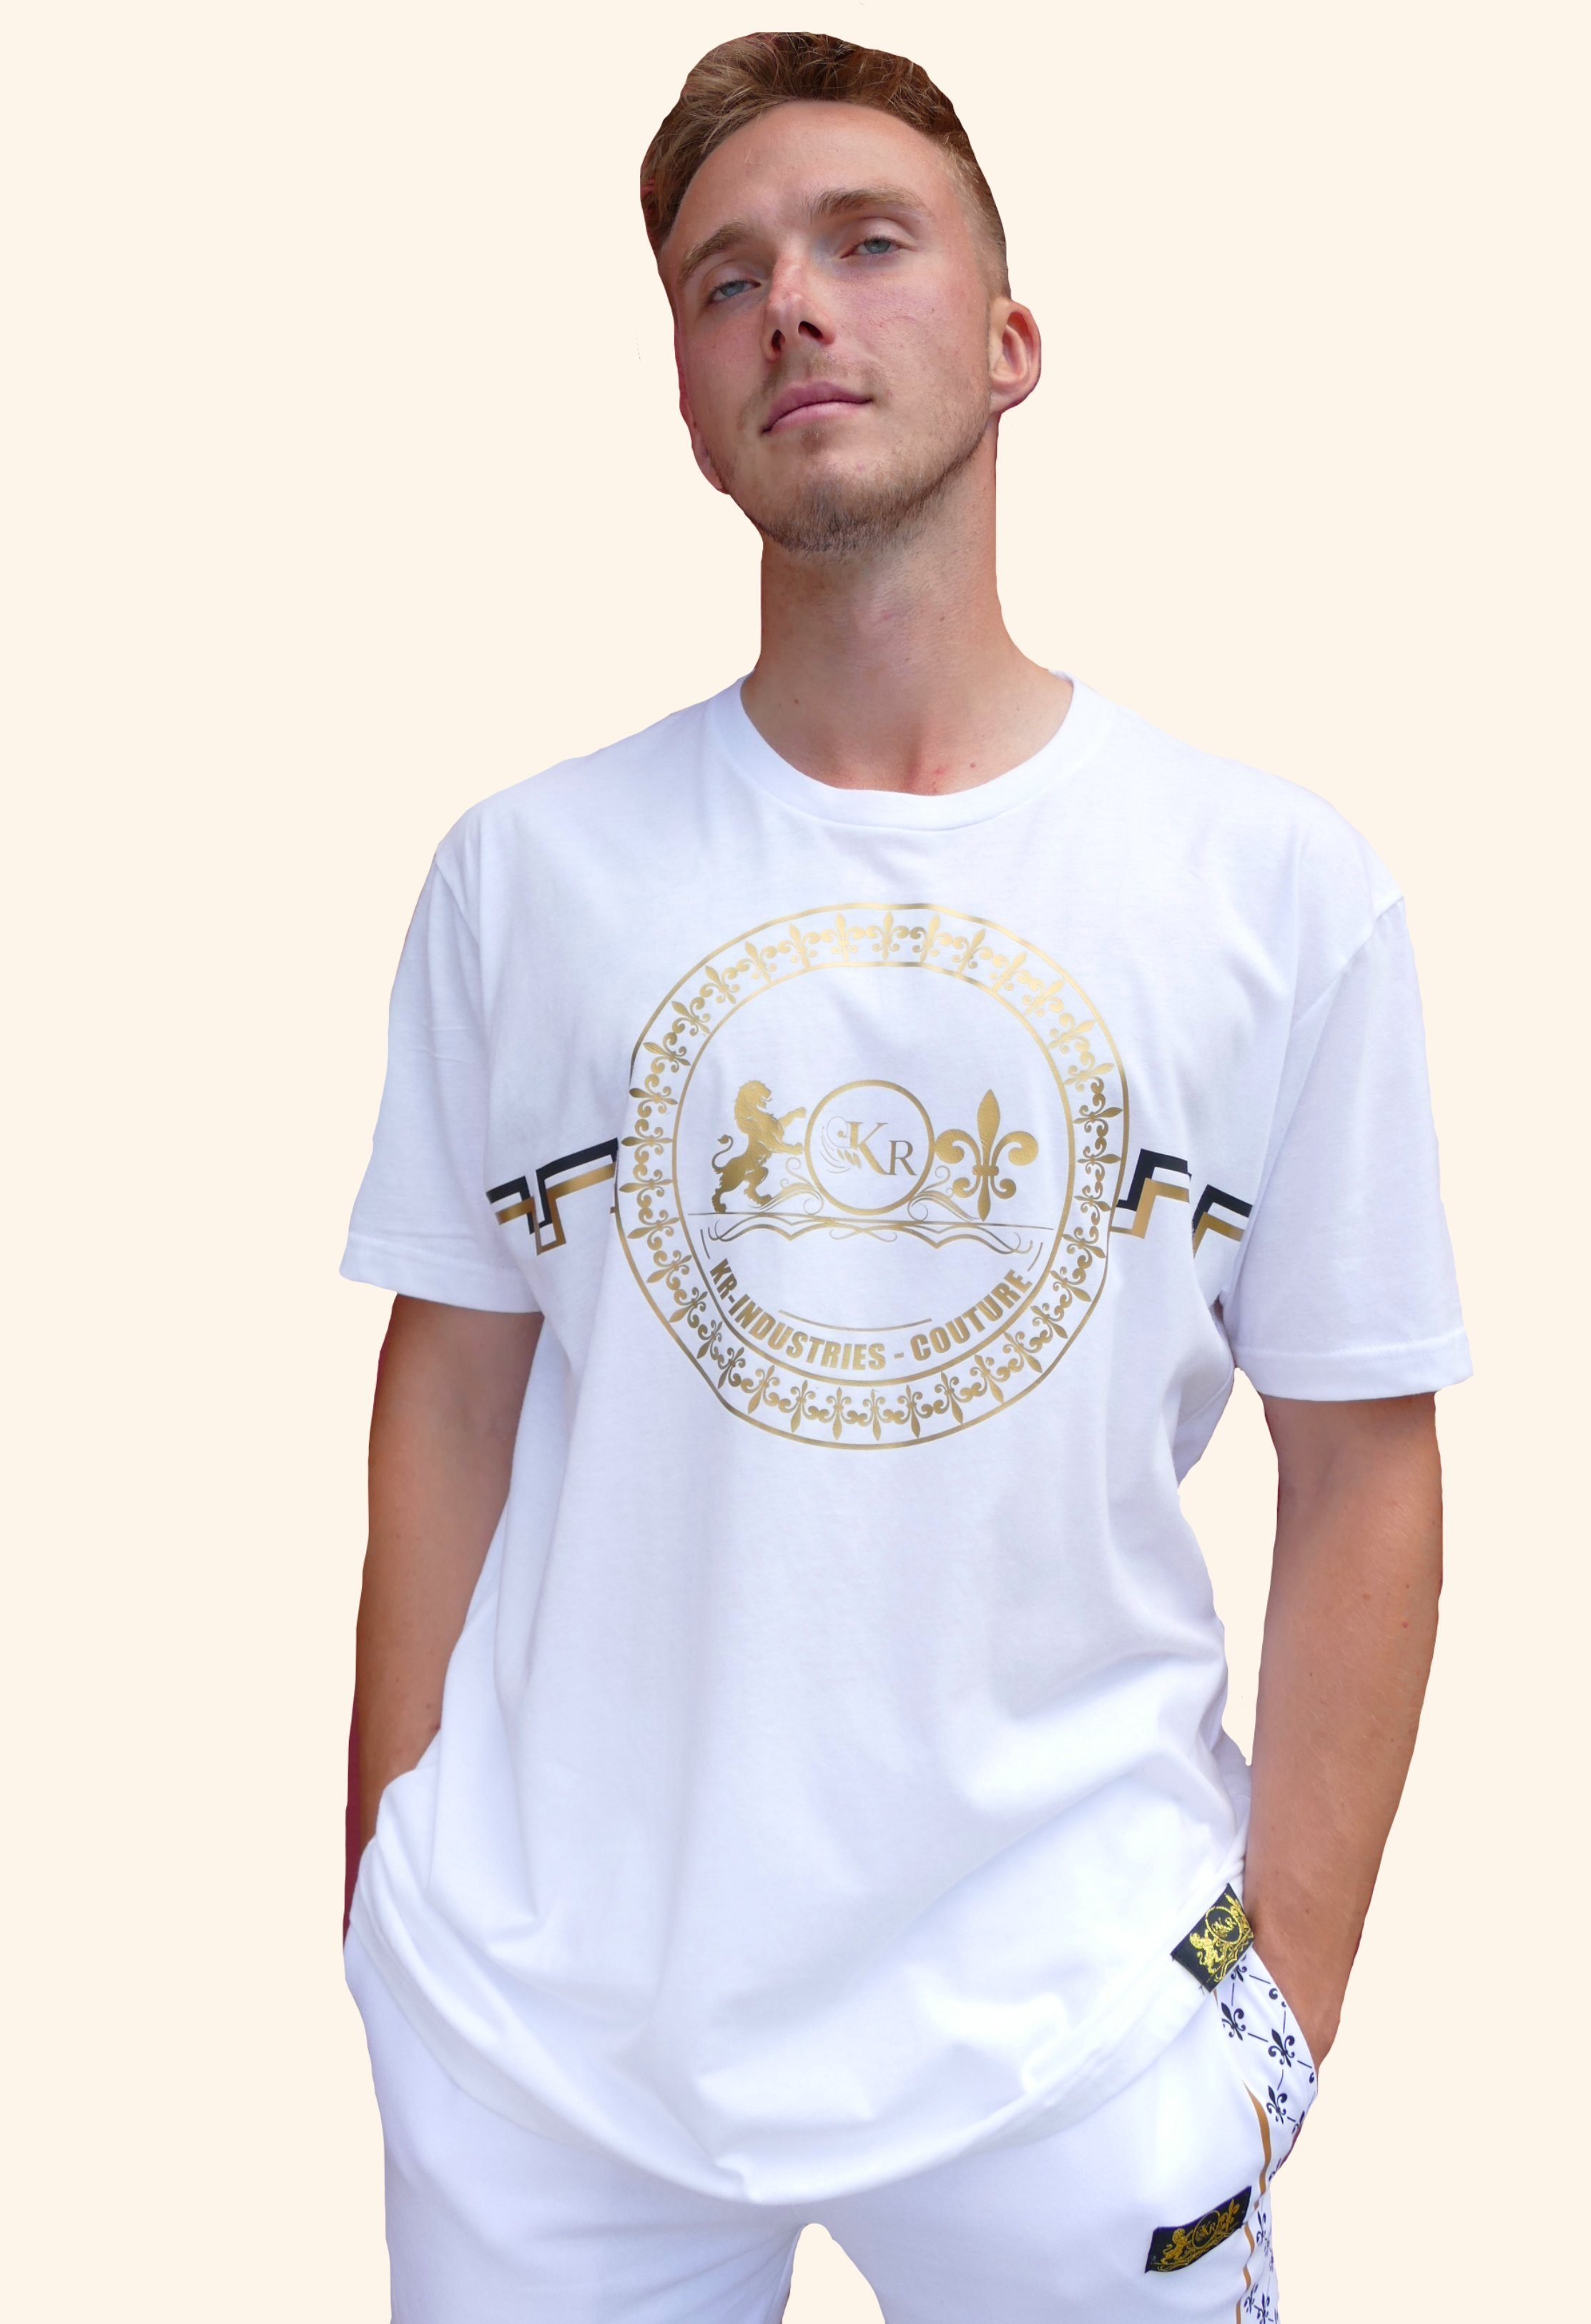 KR-Industries T-Shirt Shirt Serpentin stylisches Shirt mit hohem Tragekomfort, T-Shirt mit gold und schwarz